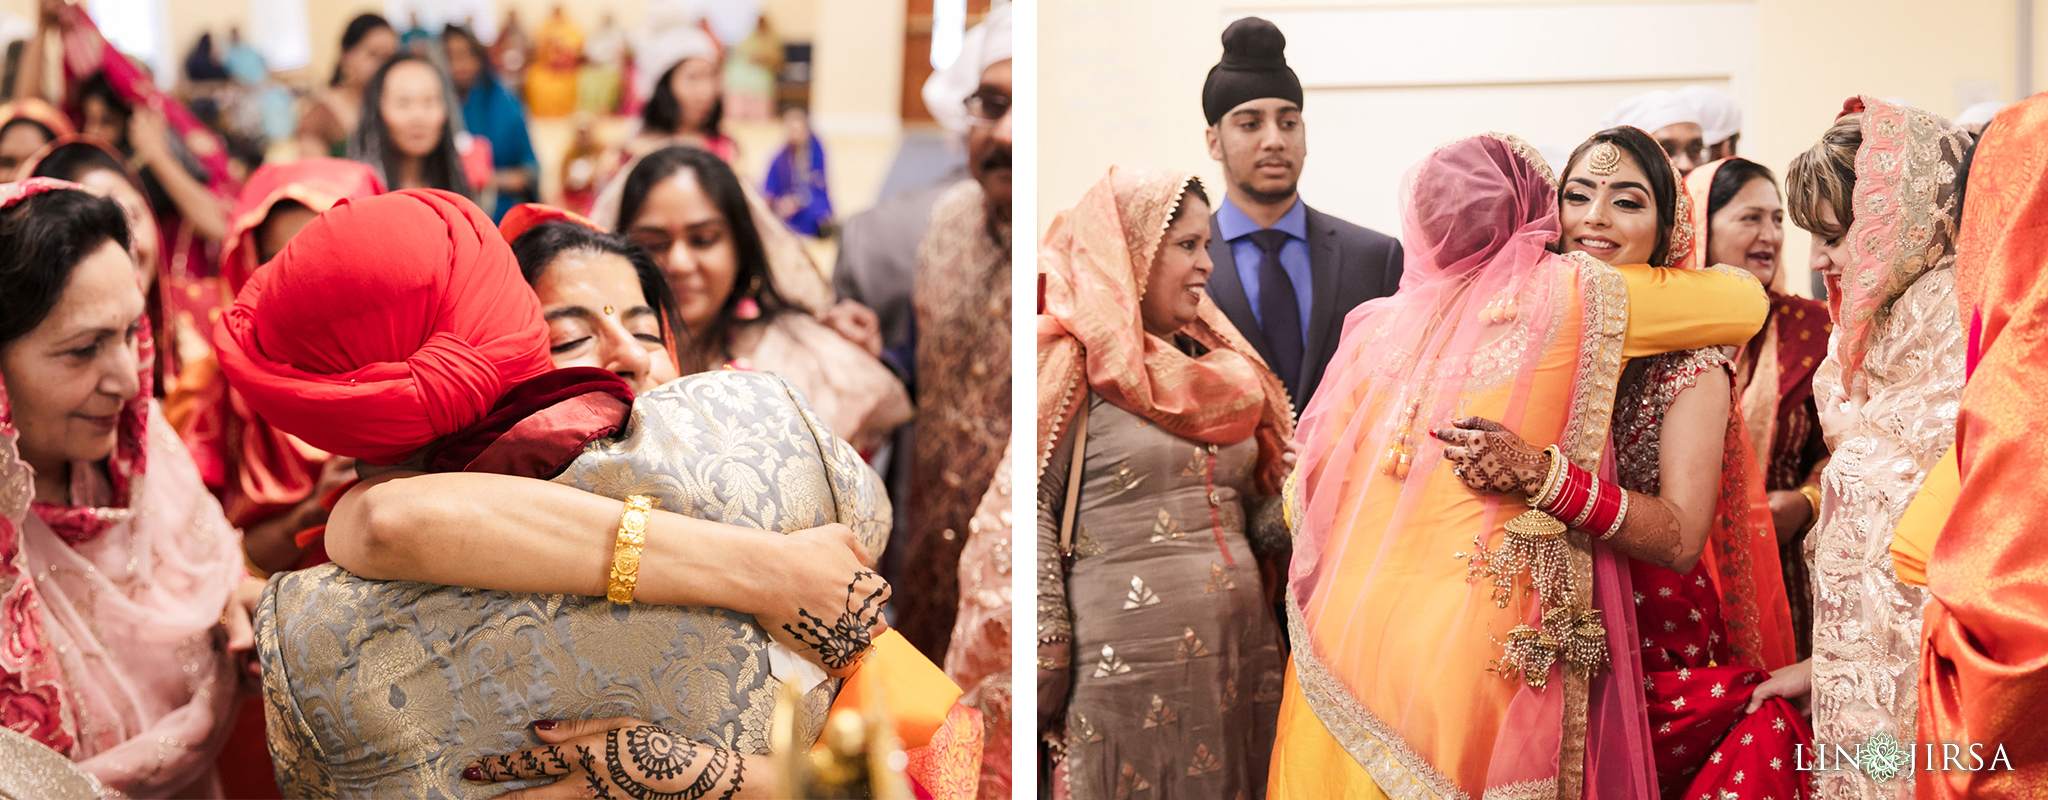 27 Sikh Gurdwara San Jose Punjabi Indian Wedding Photography